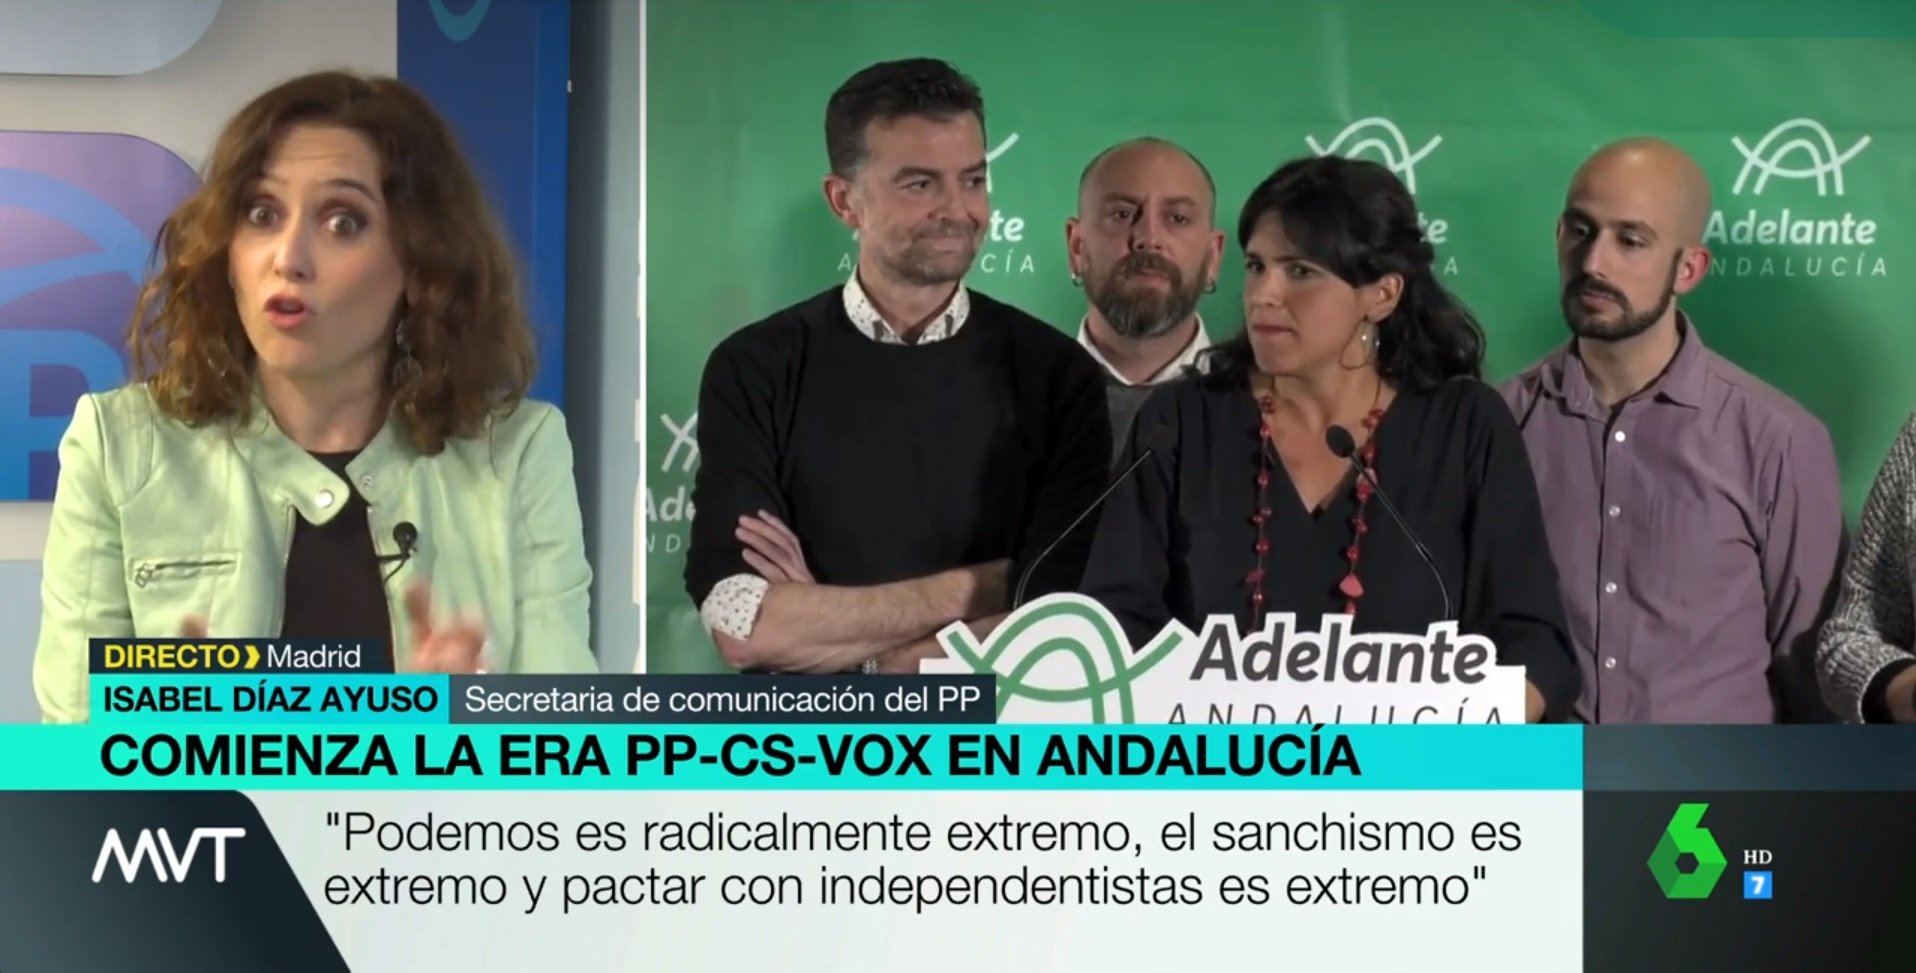 Ridícul espantós d’una portaveu del PP: “Los niños no pueden hacer pis si lo piden en español"